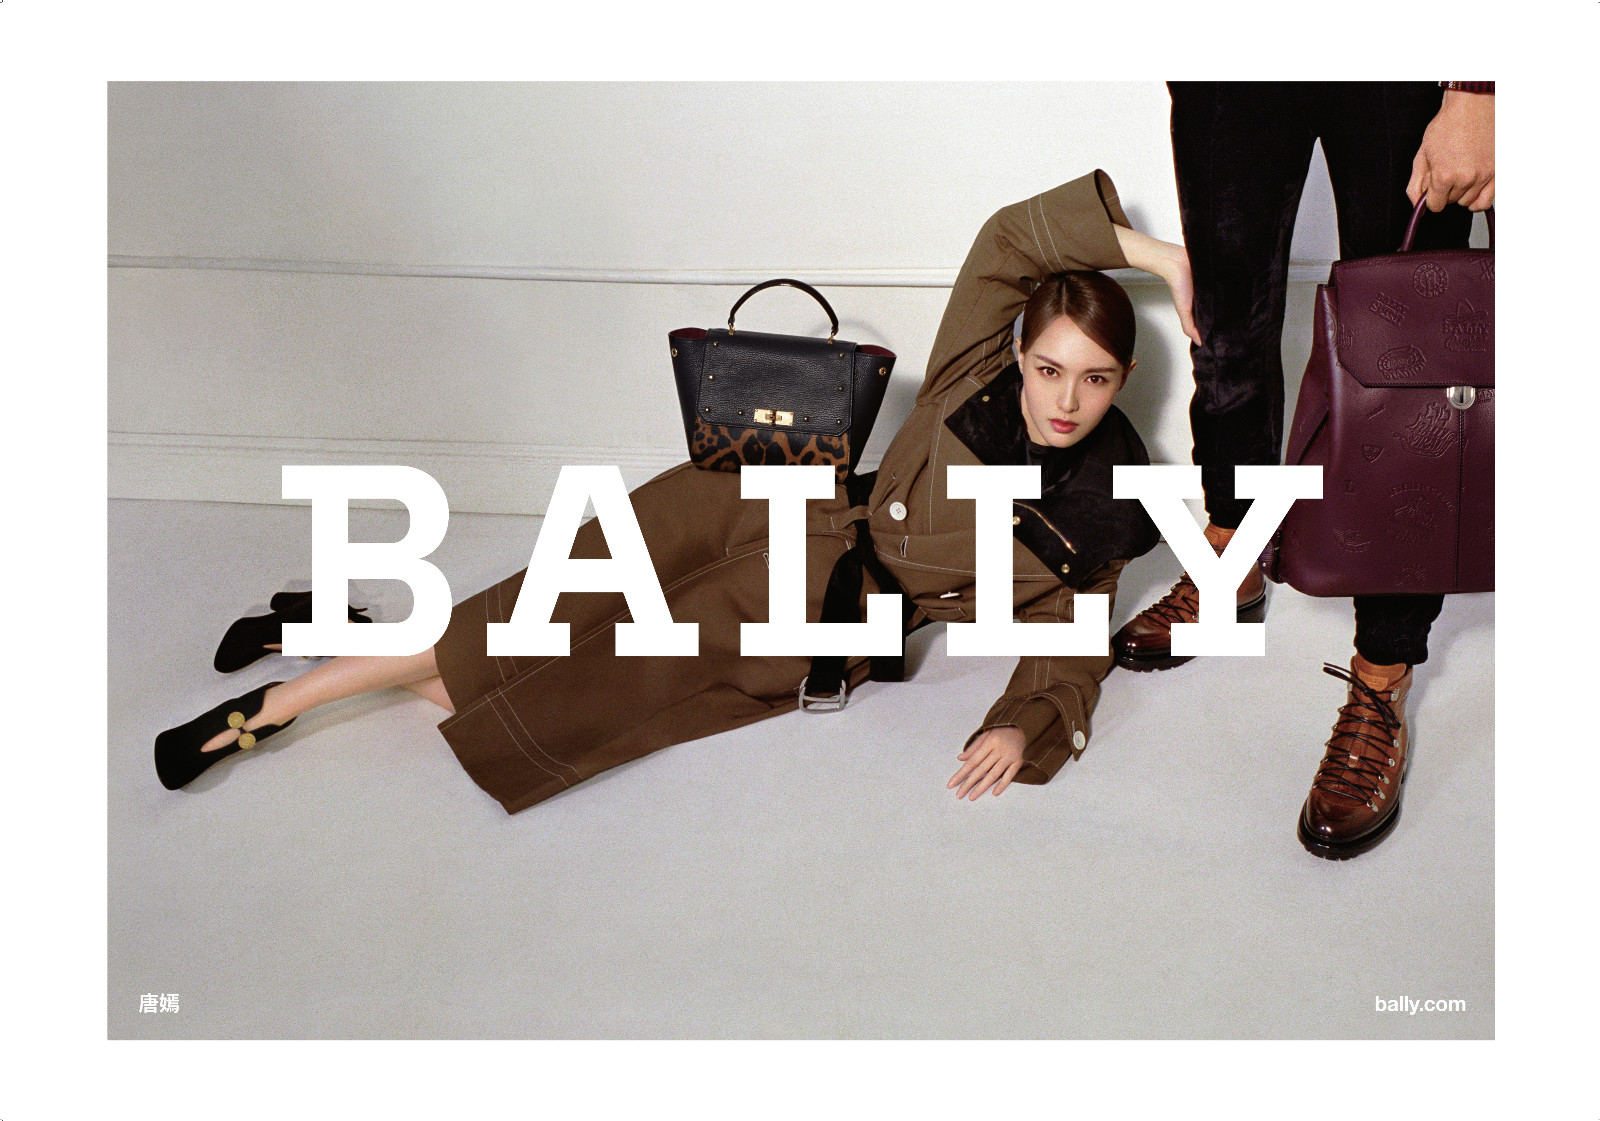 Bally 宣布唐嫣担任品牌首位亚太区代言人并出演品牌广告大片